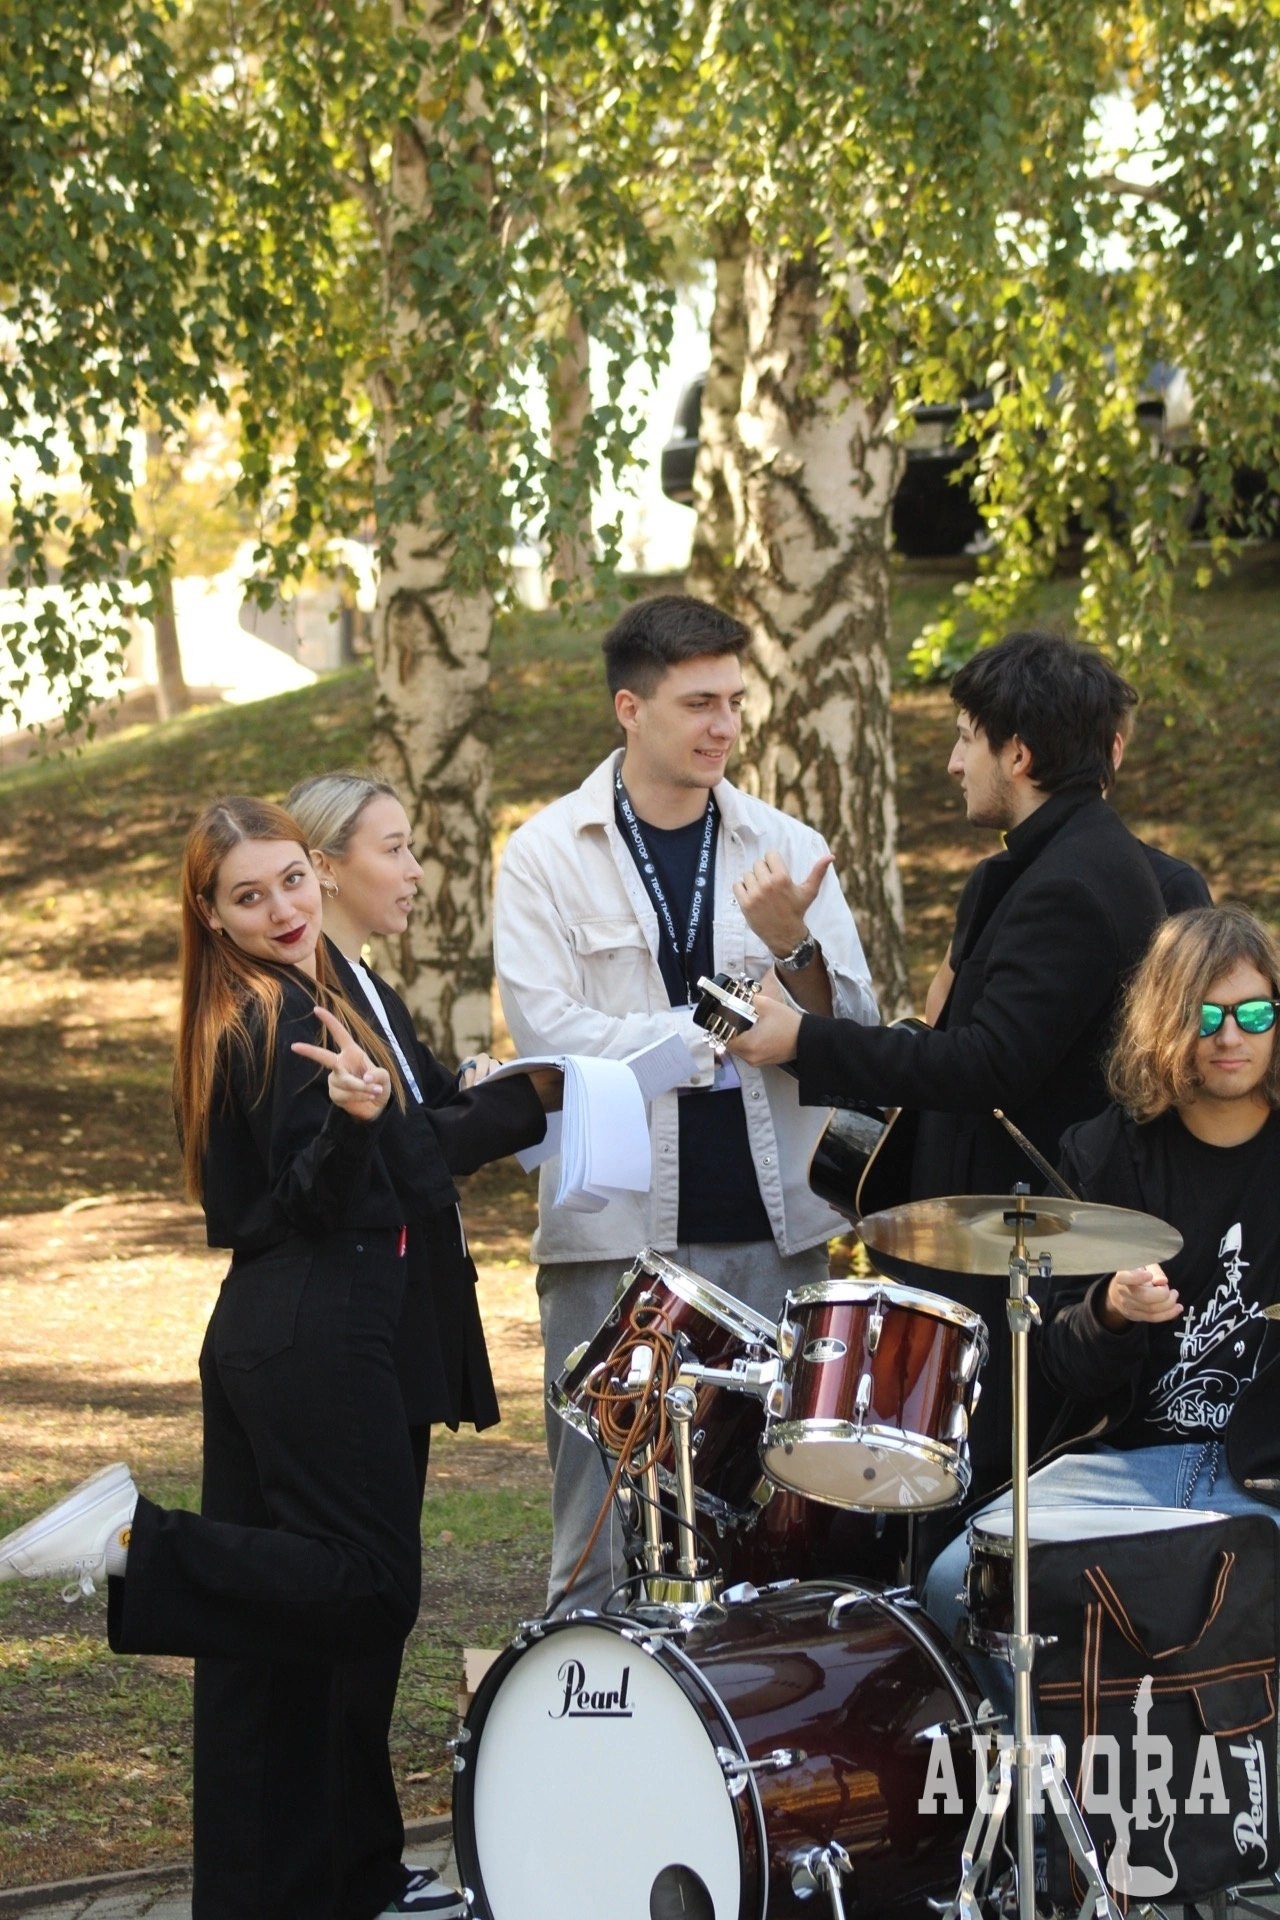 Музыкальная группа "АВРОРА" являлась одной из станций ежегодного квеста для первокурсников Института истории и государственного управления